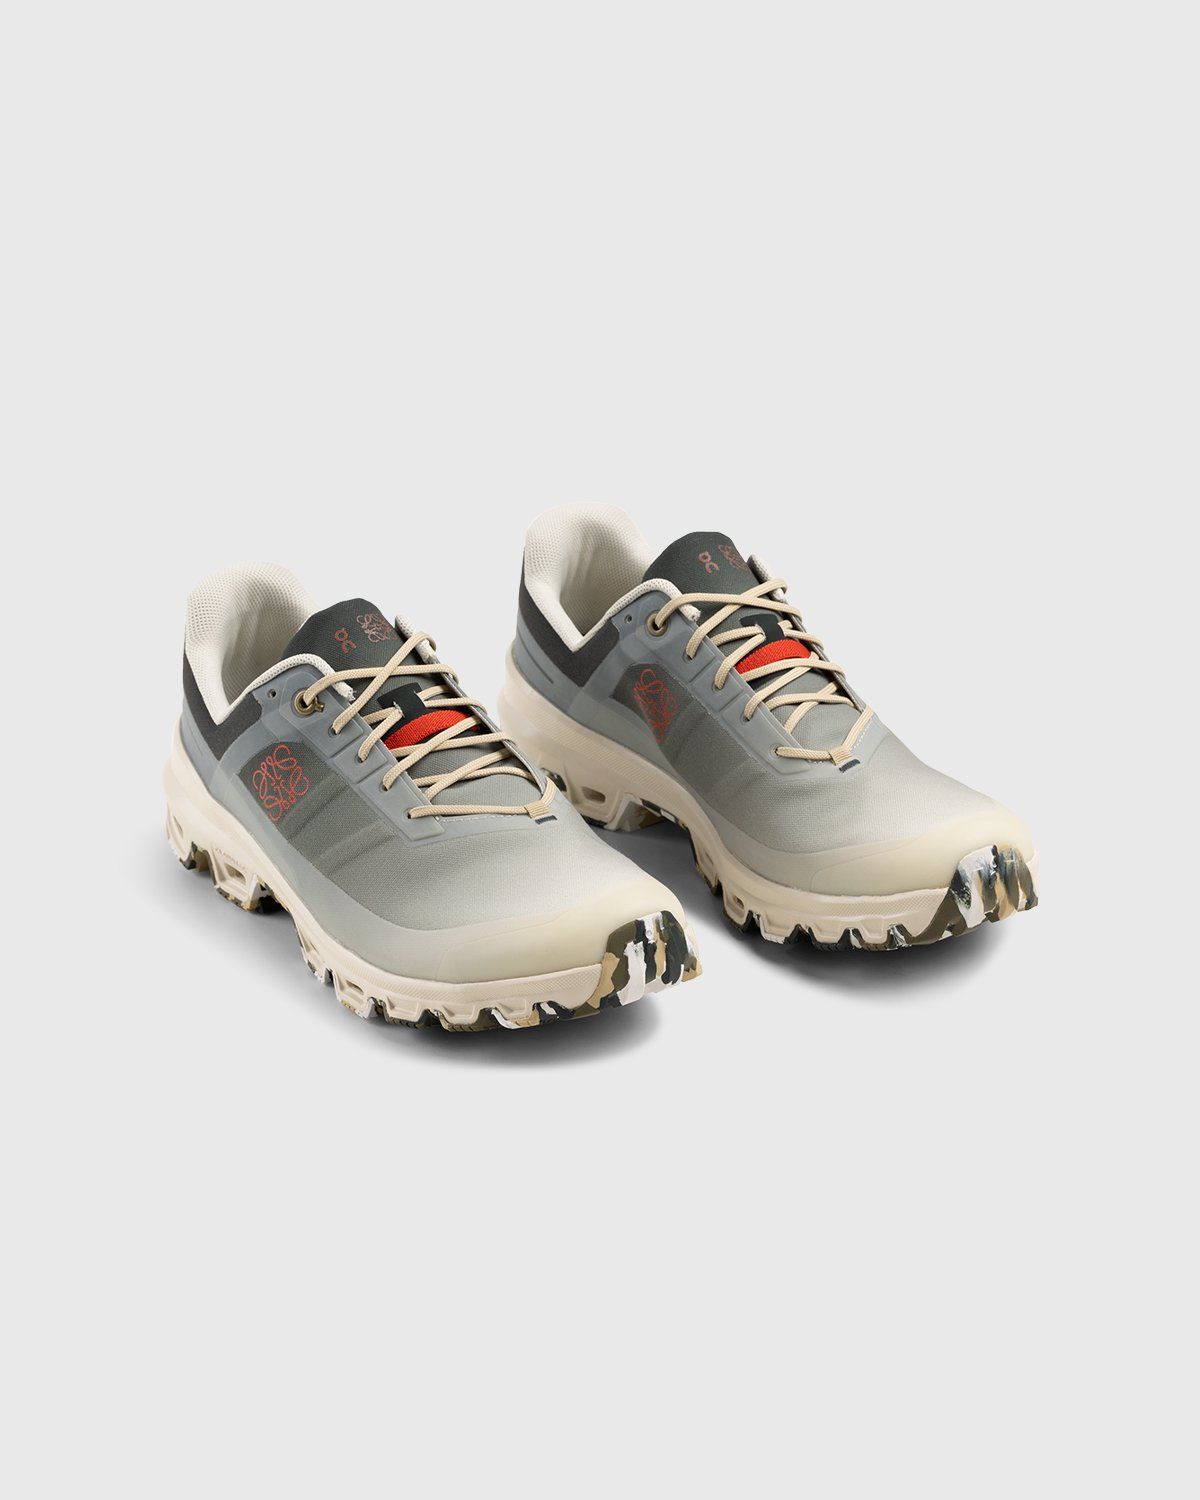 Loewe x On – Men's Cloudventure Gradient Khaki - Low Top Sneakers - Grey - Image 3